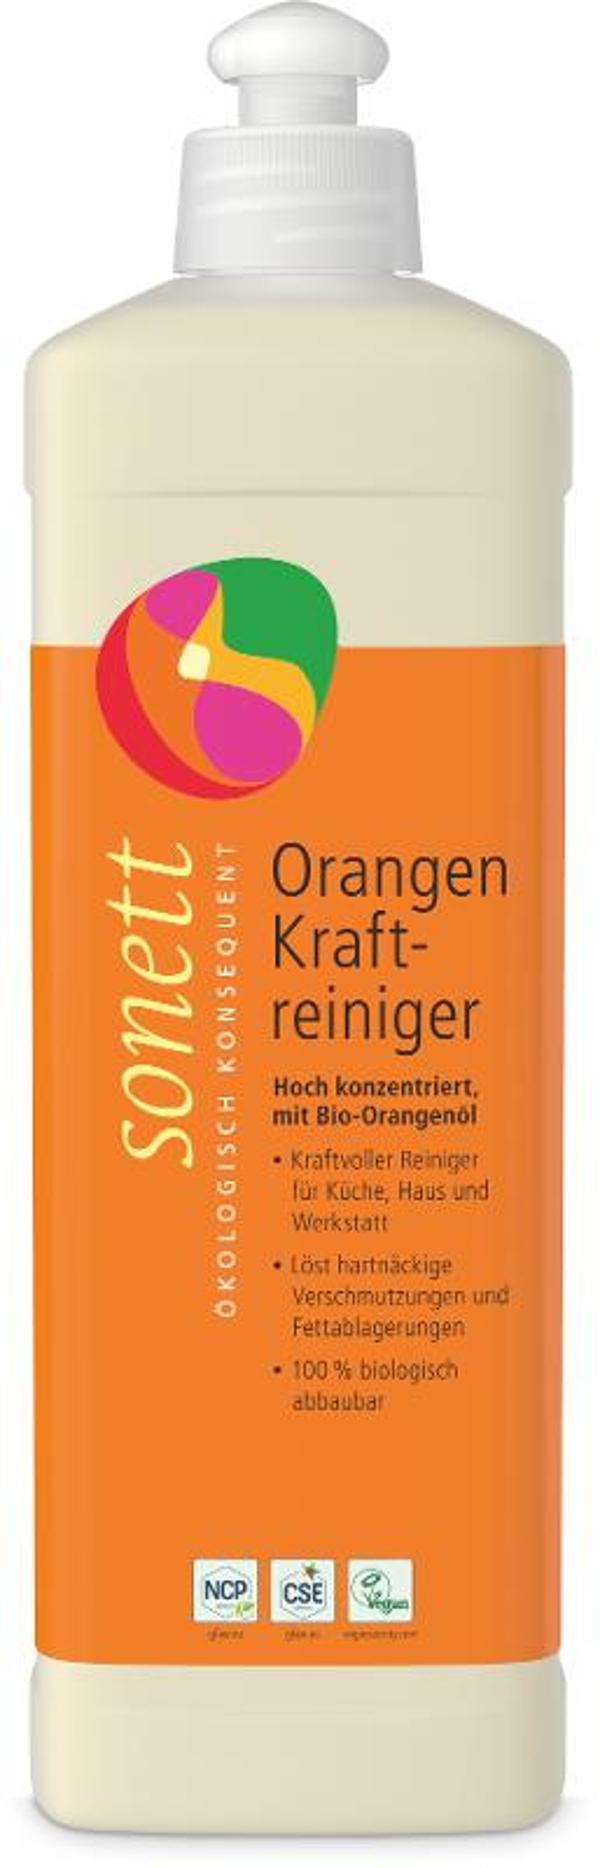 Produktfoto zu Orangen Kraftreiniger 0,5 l Sonett